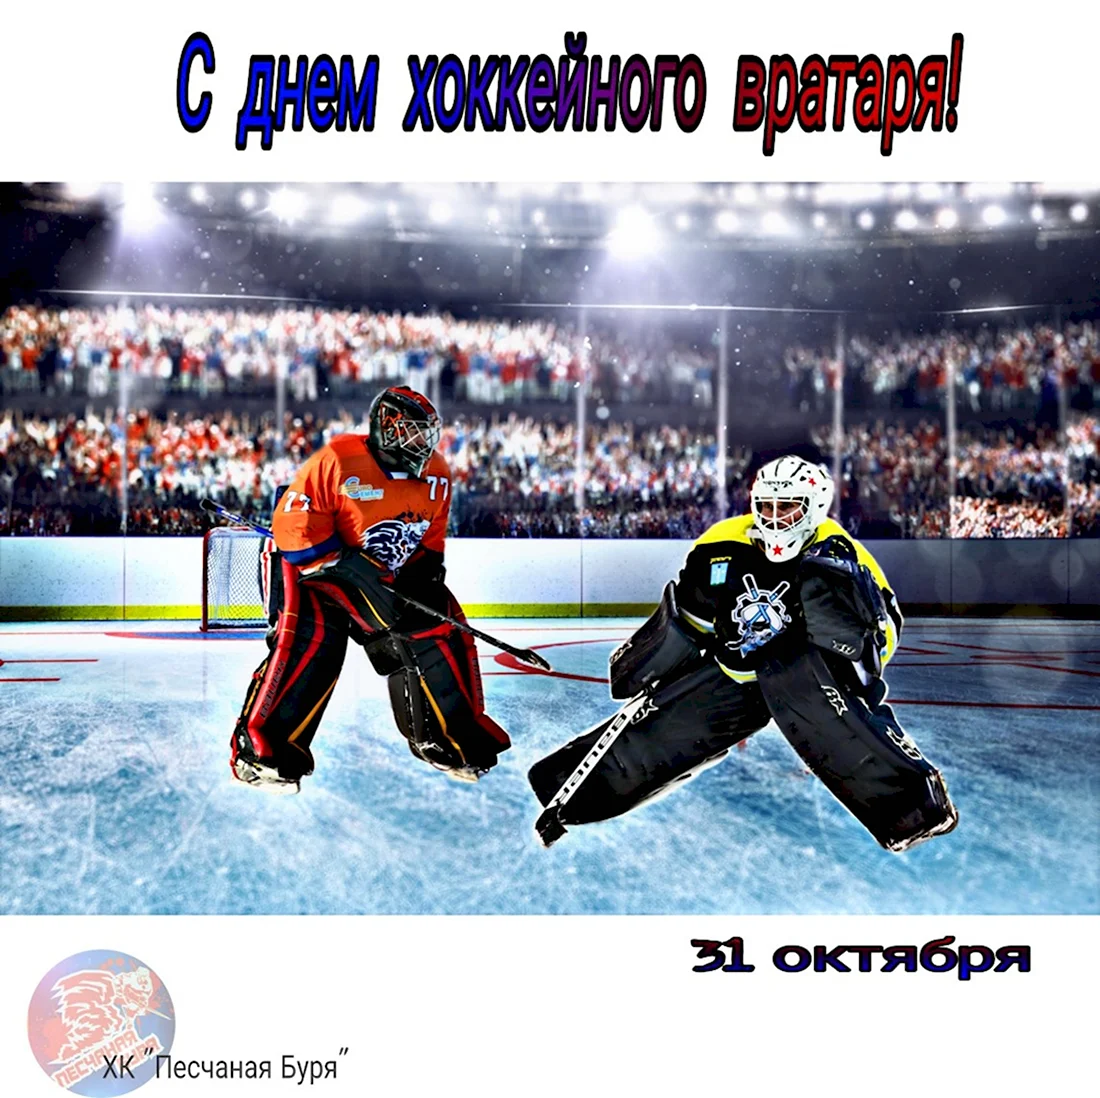 Международный день хоккейного вратаря 31 октября. Открытка, картинка с поздравлением, с праздником